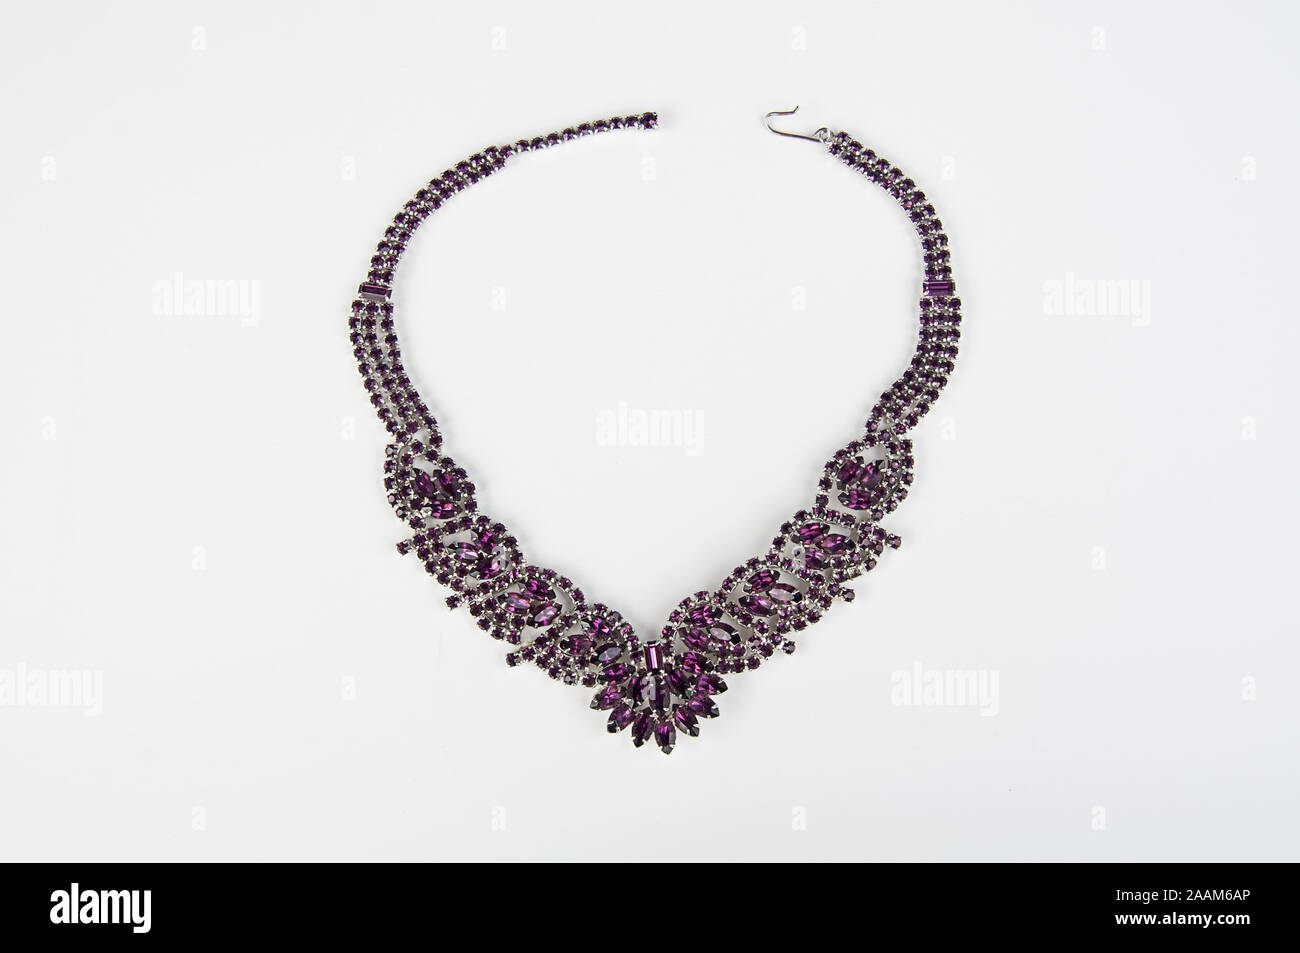 Der Violette Amethyst Halskette Frauen isoliert auf hellen Hintergrund. Schöne Mode Zubehör für Damen Schmuck Edelsteine. Stockfoto